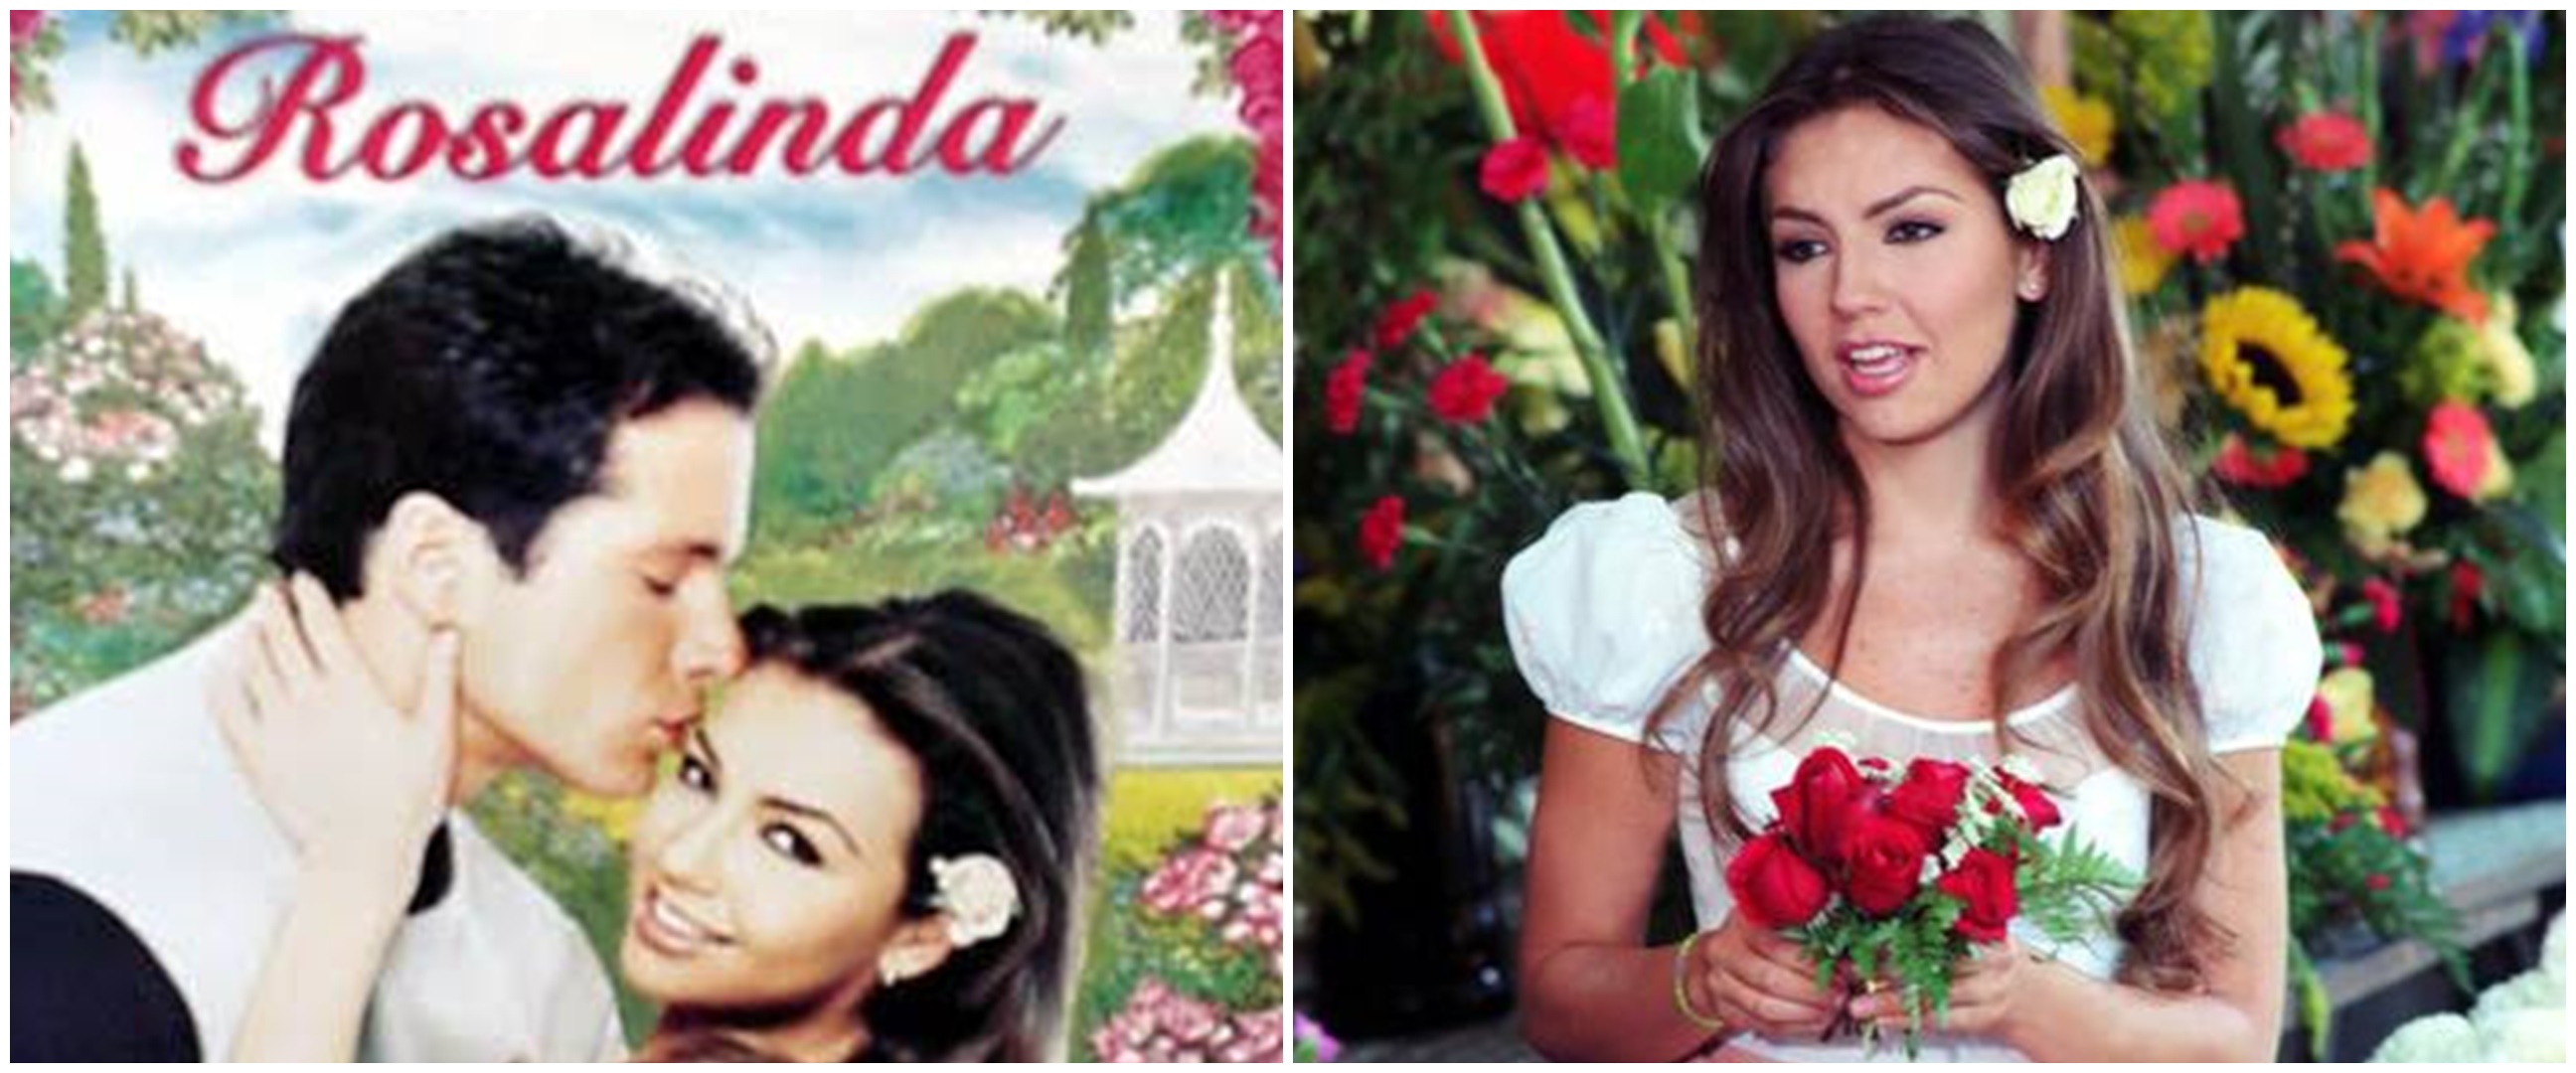 Bintang utama telenovela Rosalinda kini jadi penyanyi, ini 9 potret memesonanya saat goncang panggung